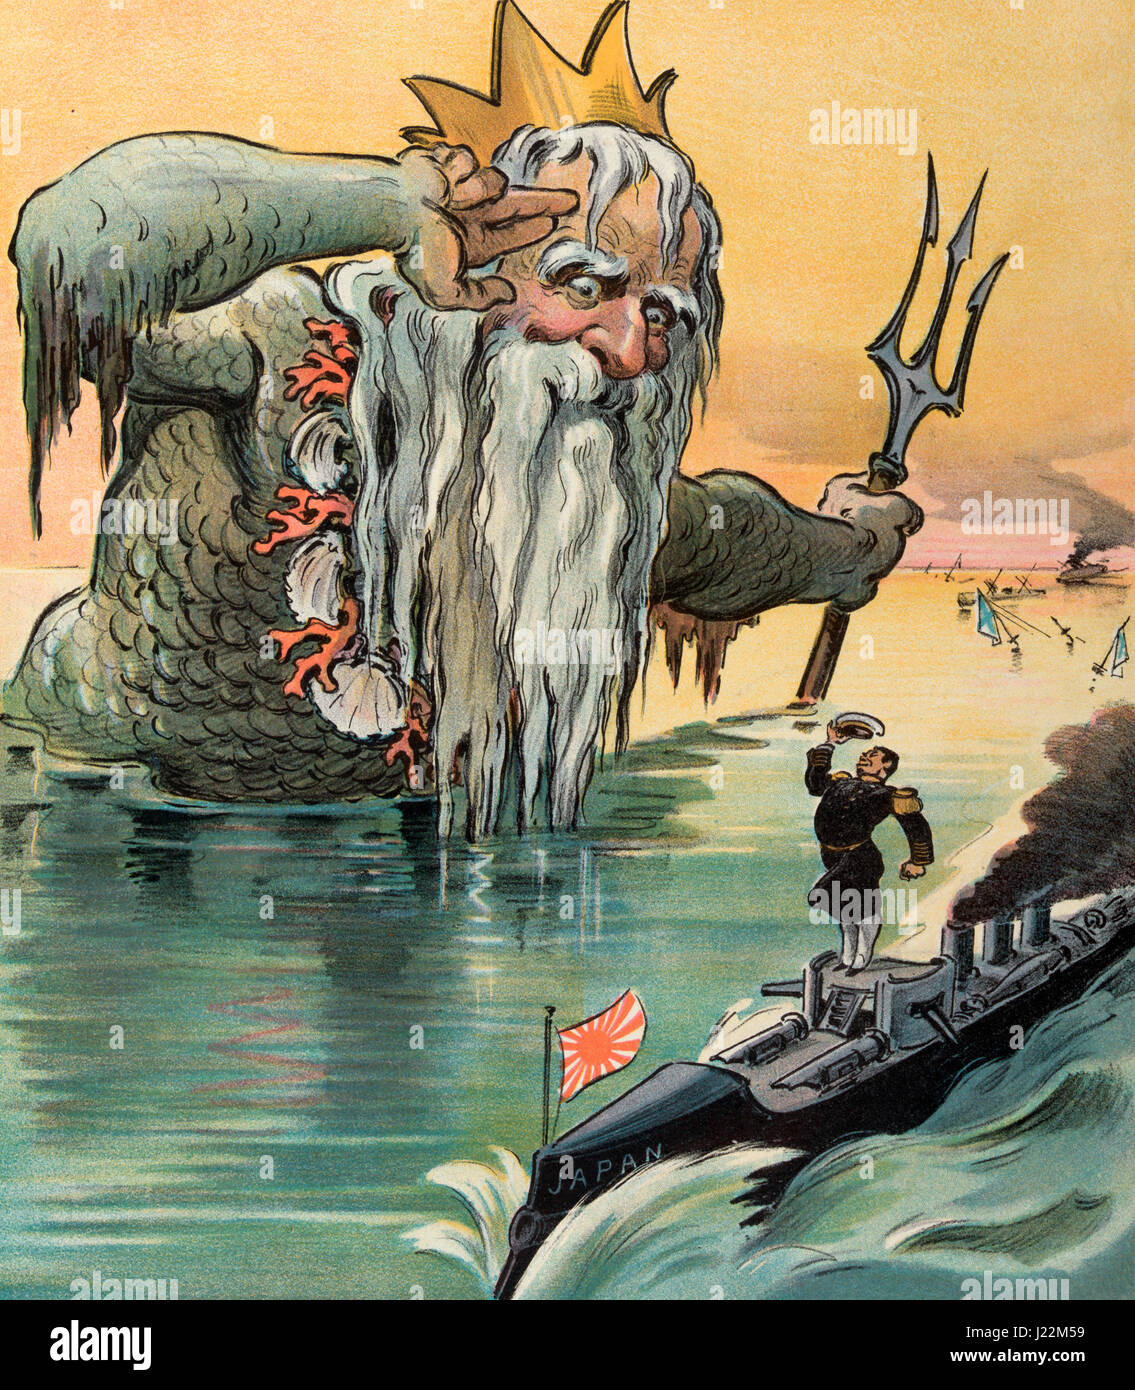 The old salt salue - Illustration montre Neptune, le dieu romain de la mer, un hommage à l'amiral japonais sur une canonnière, dans l'arrière-plan sont les ruines d'une flotte de la marine russe. Caricature politique au cours de la guerre Russo - Japonais Banque D'Images